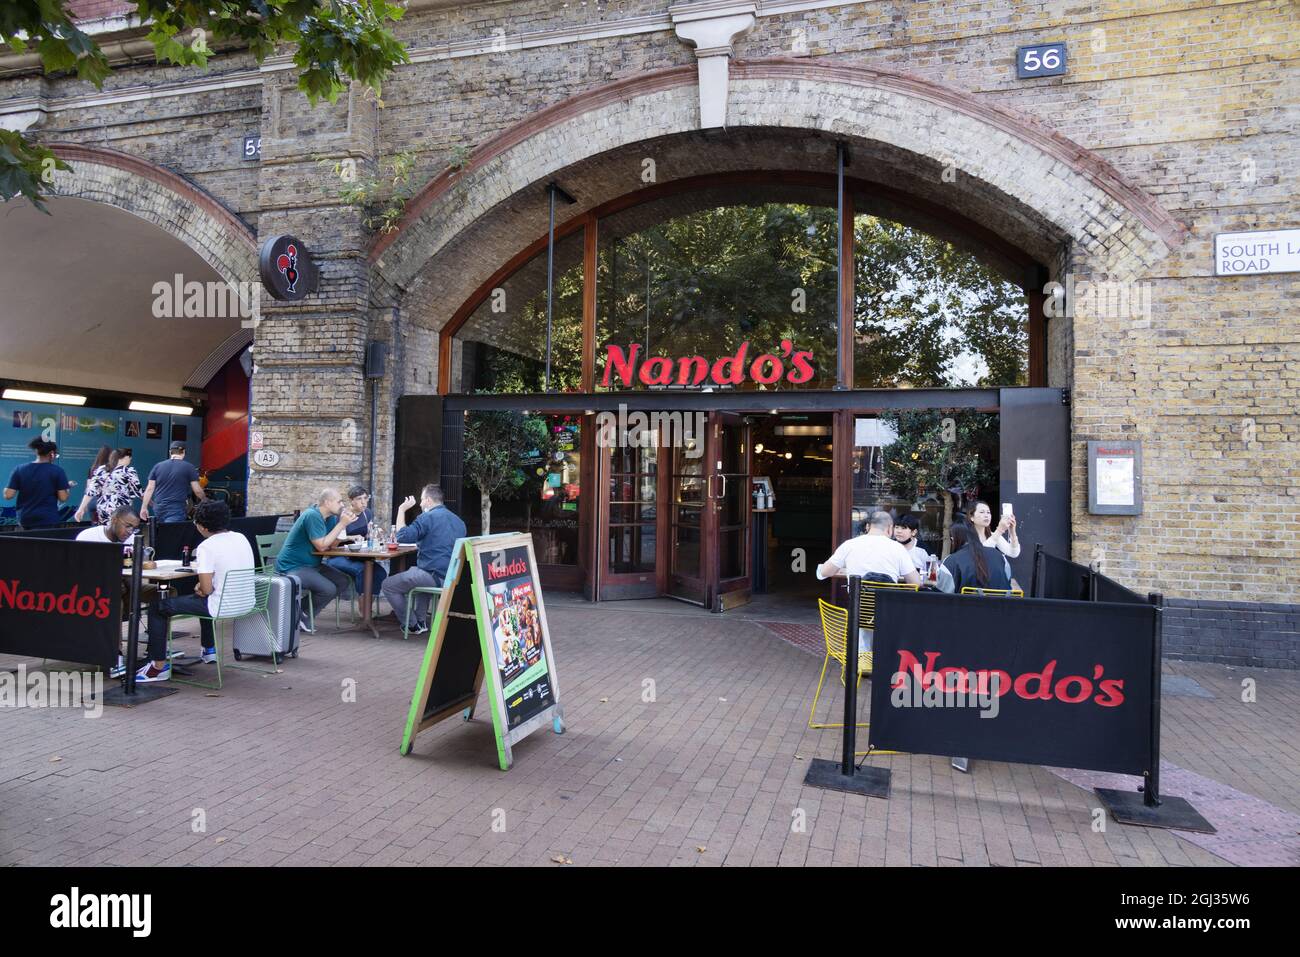 Nandos UK; Nandos restaurant with people eating outside, Vauxhall, London UK Stock Photo